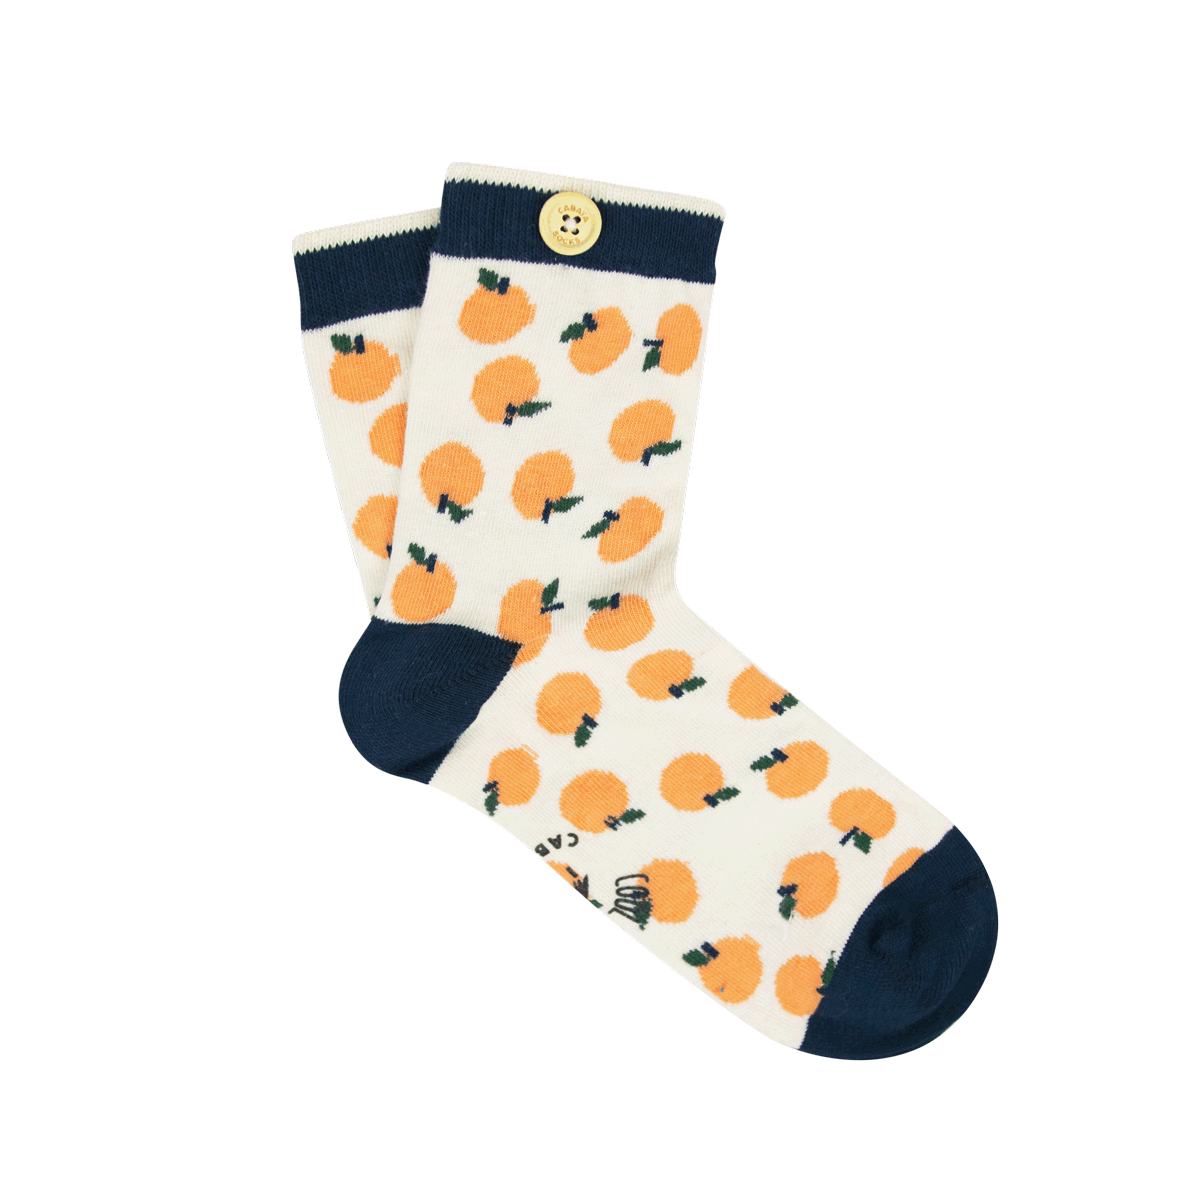 unloosable-socks-button-women-36-41-socks20-clau-ora